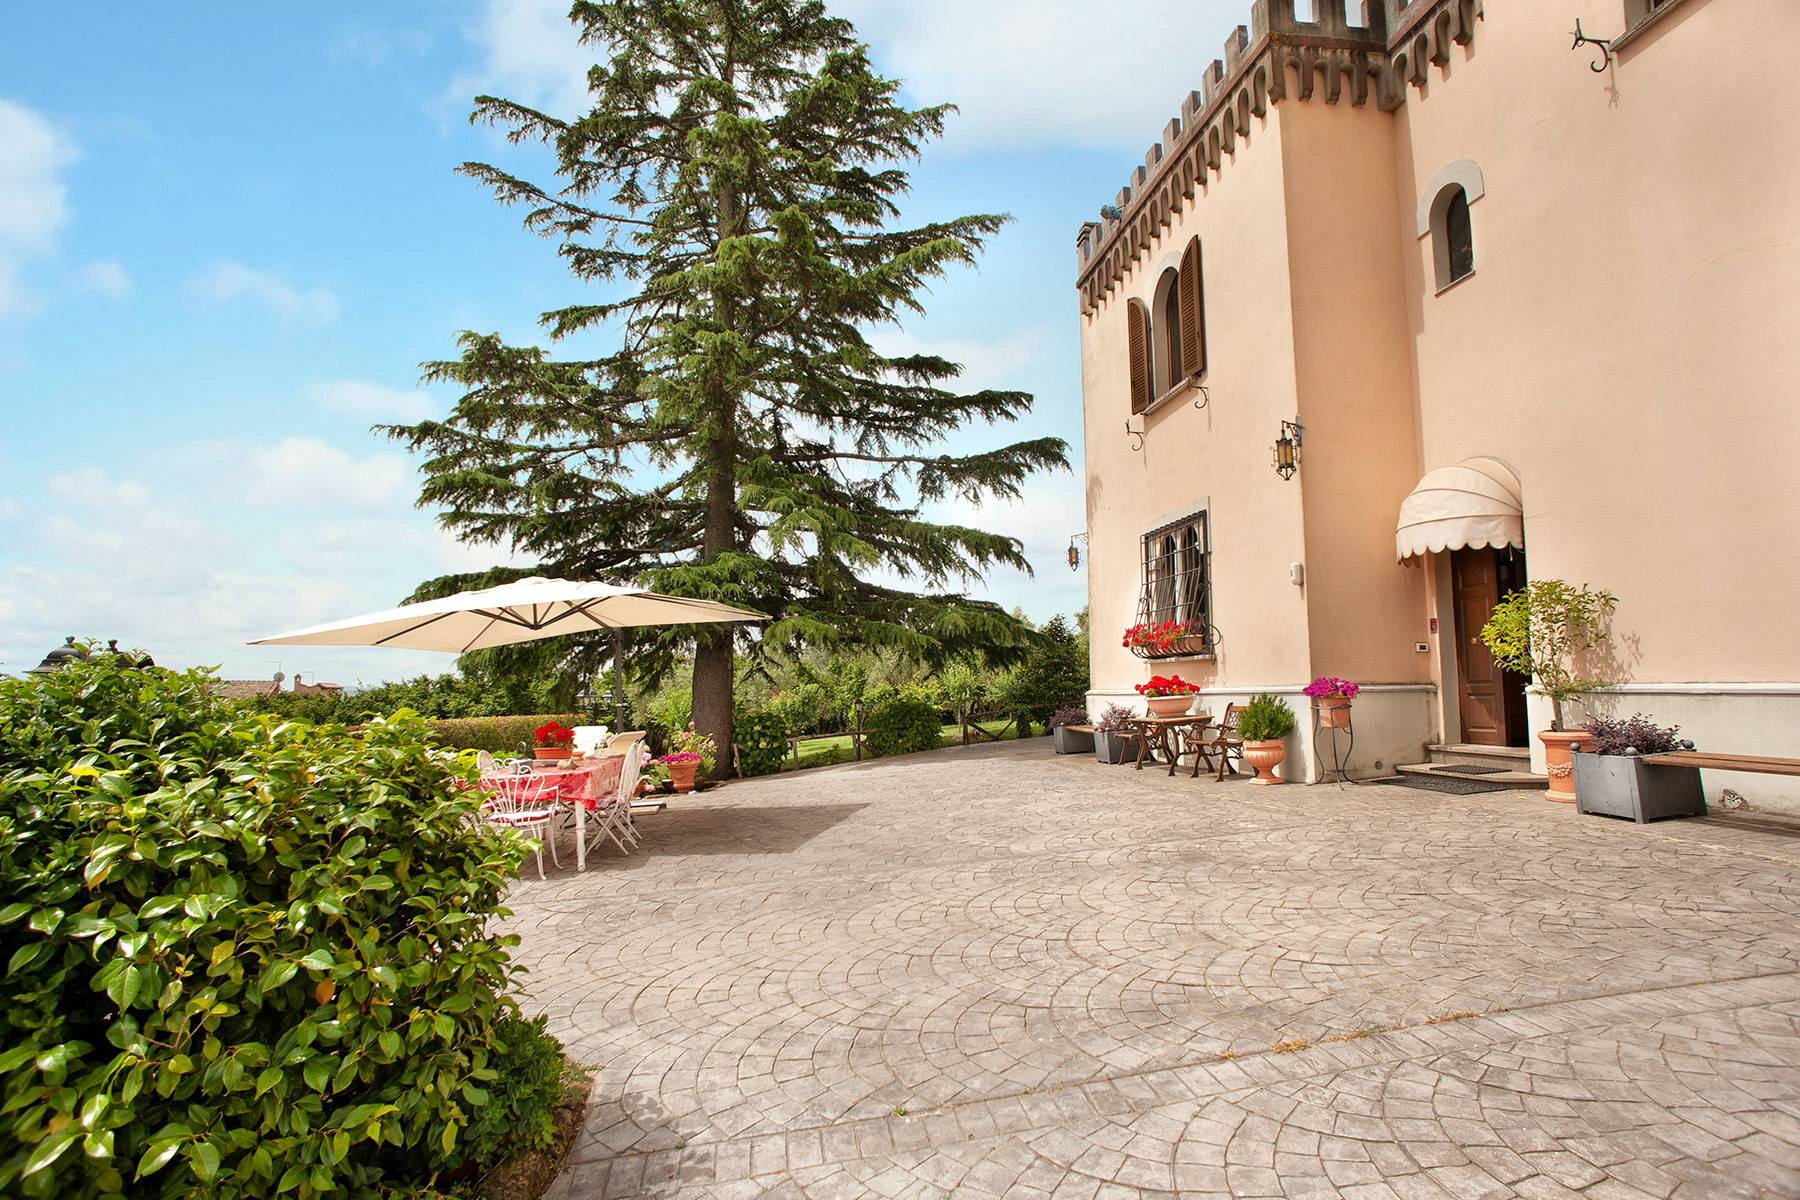 Villa in Vendita a Ronciglione: 5 locali, 500 mq - Foto 24